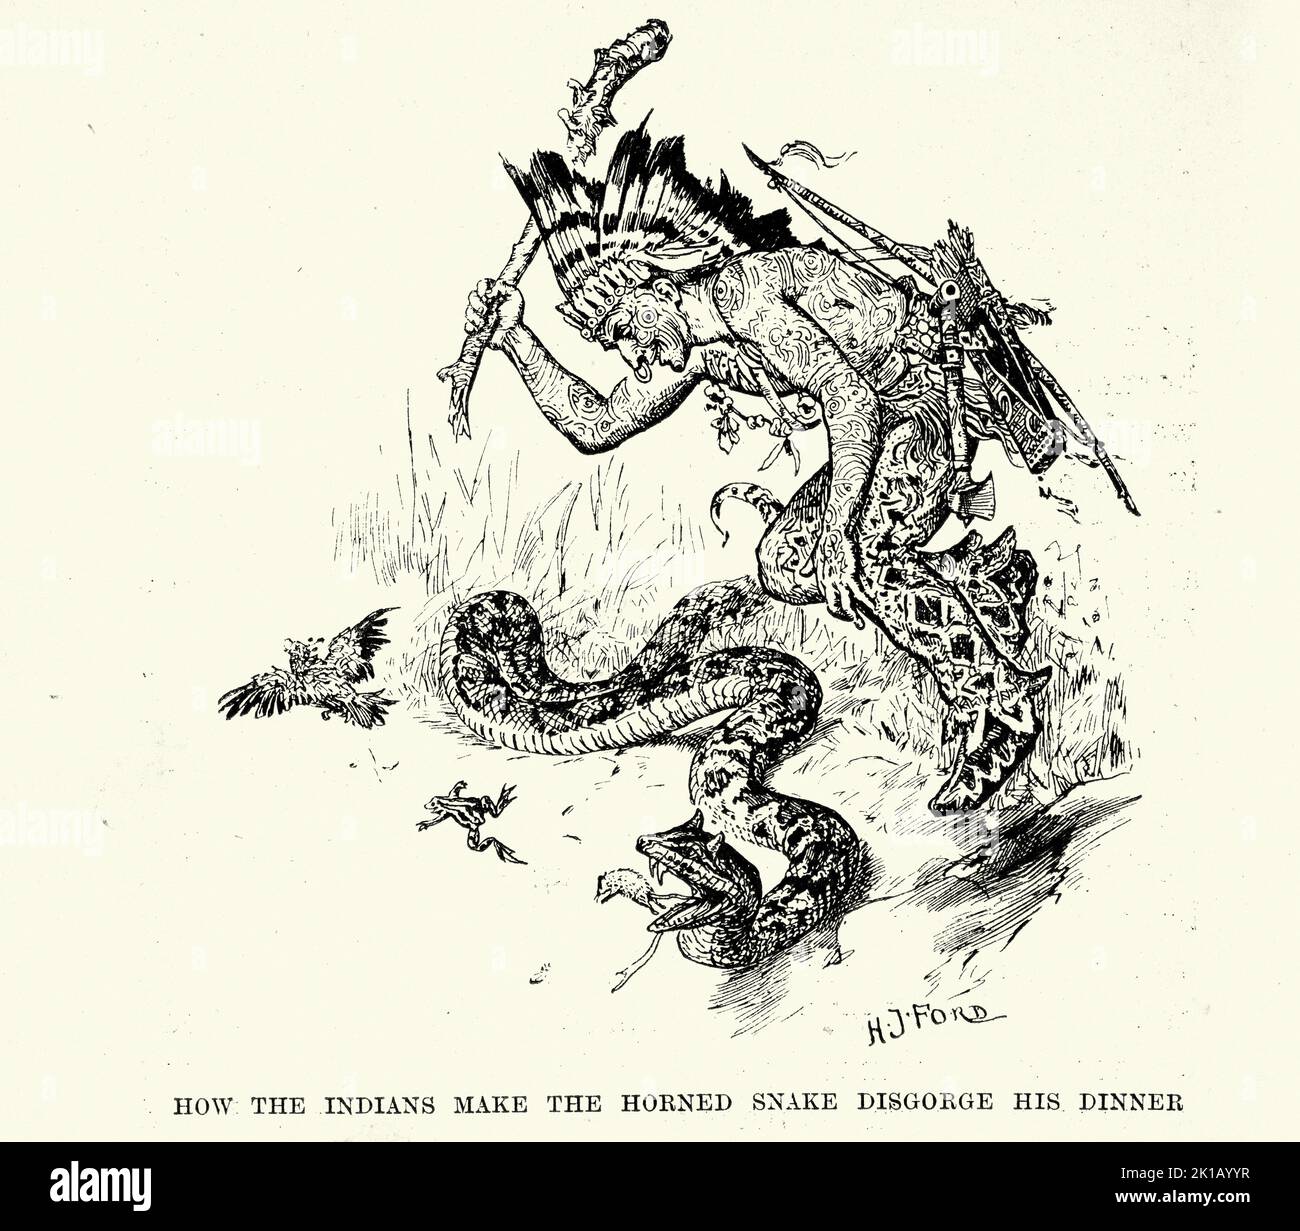 Illustration vintage, chasseur amérindien attaquant le serpent à cornes, histoire d'aventure victorienne Banque D'Images